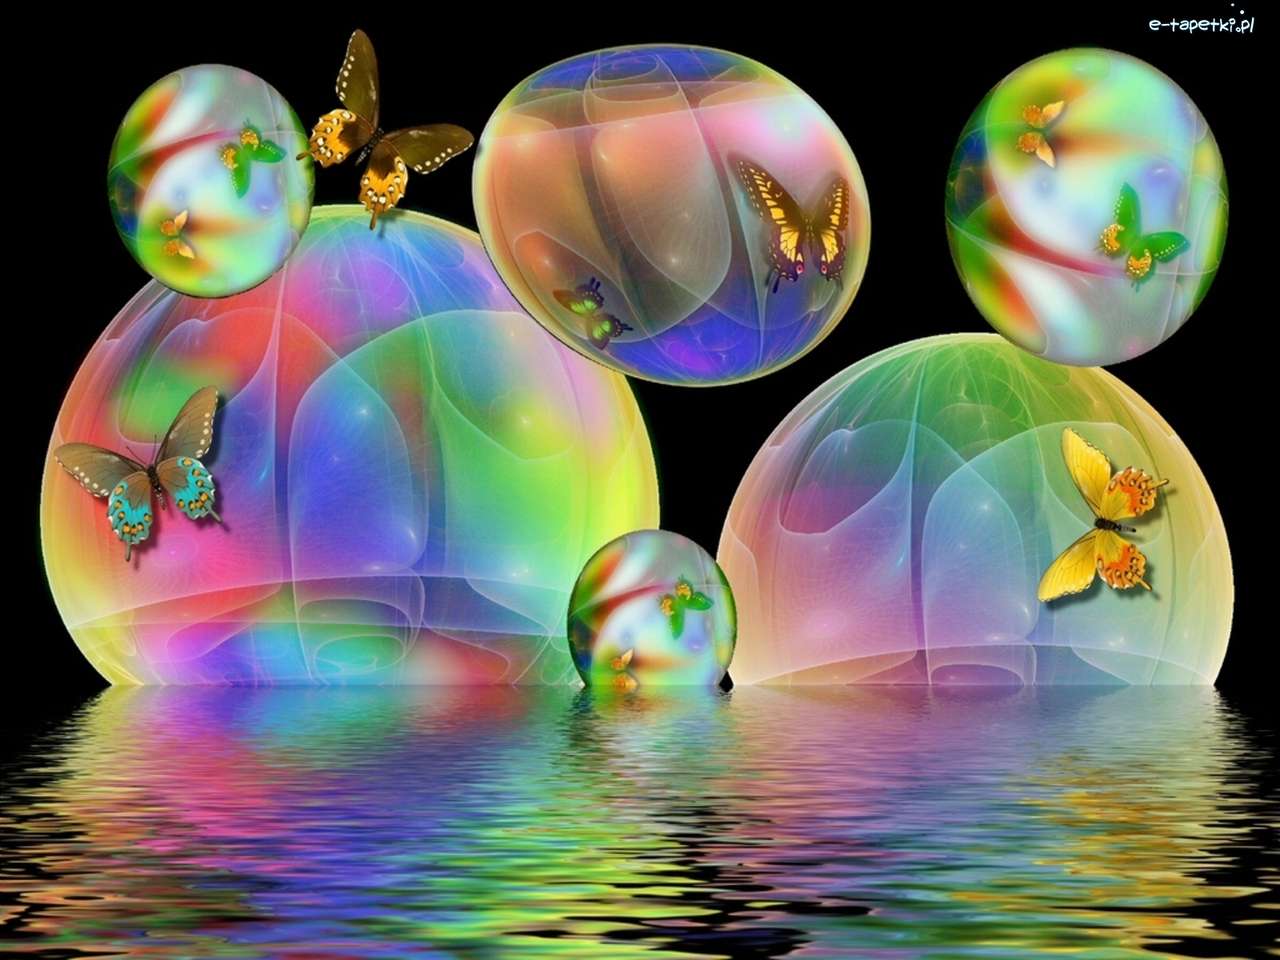 компьютерная графика - радужные пузыри и бабочки онлайн-пазл